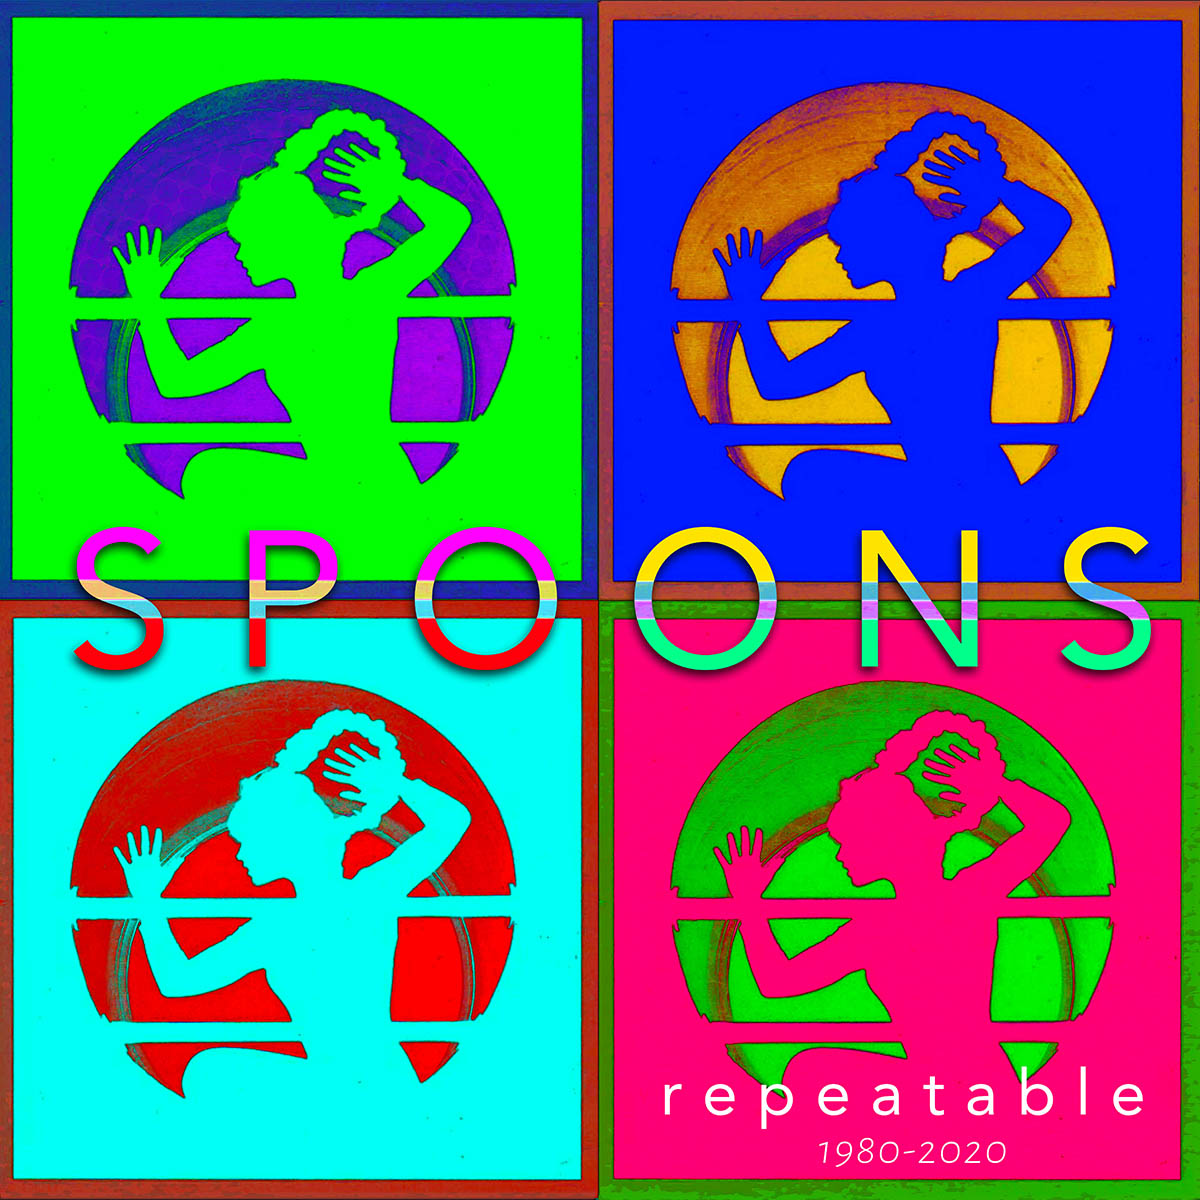 Spoons - Repeatable Album Cover 